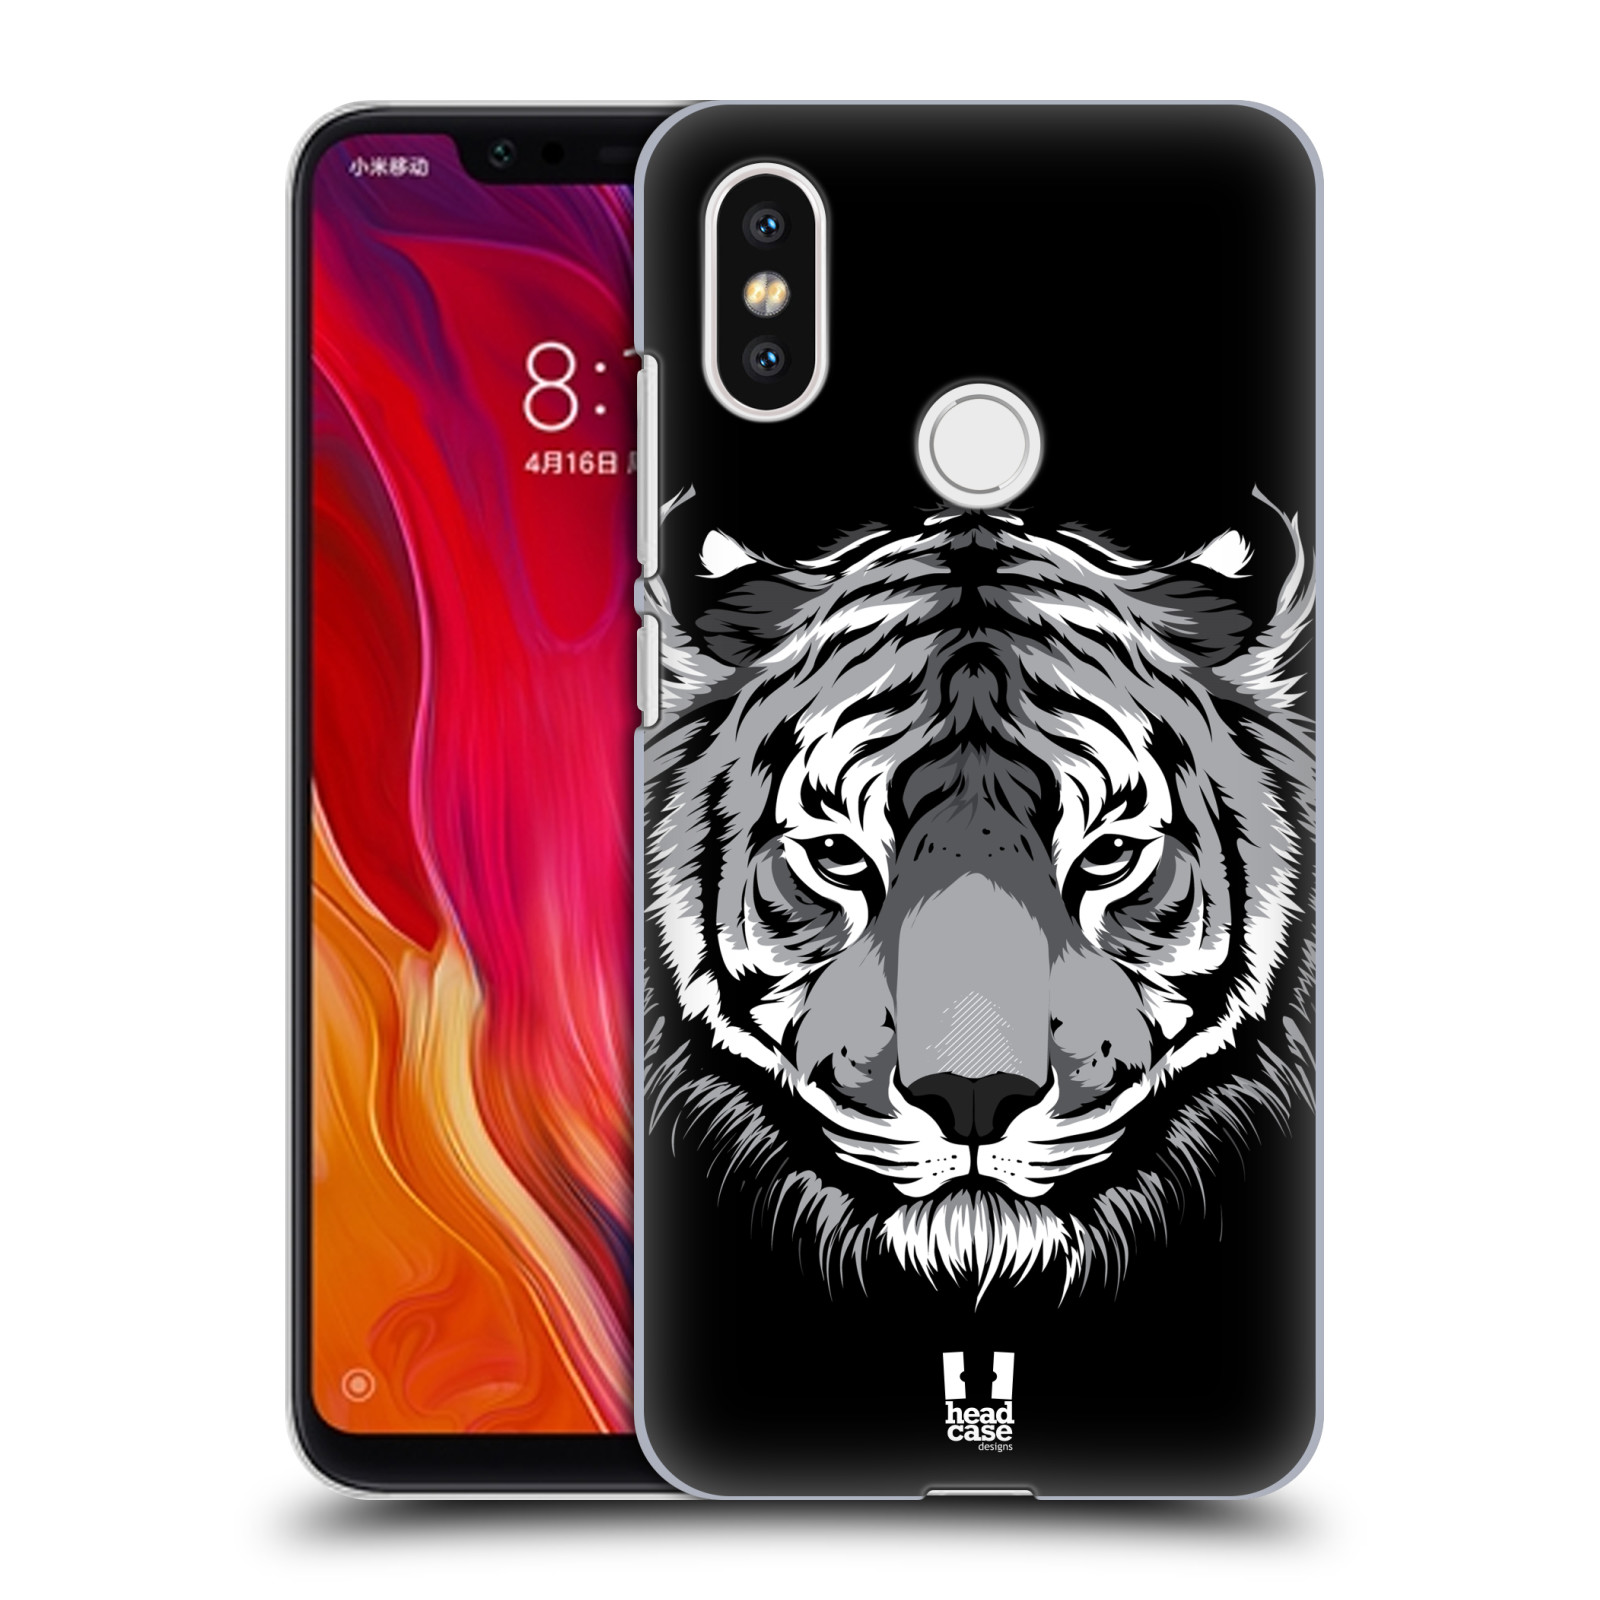 HEAD CASE plastový obal na mobil Xiaomi Mi 8 vzor Zvíře kreslená tvář 2 tygr